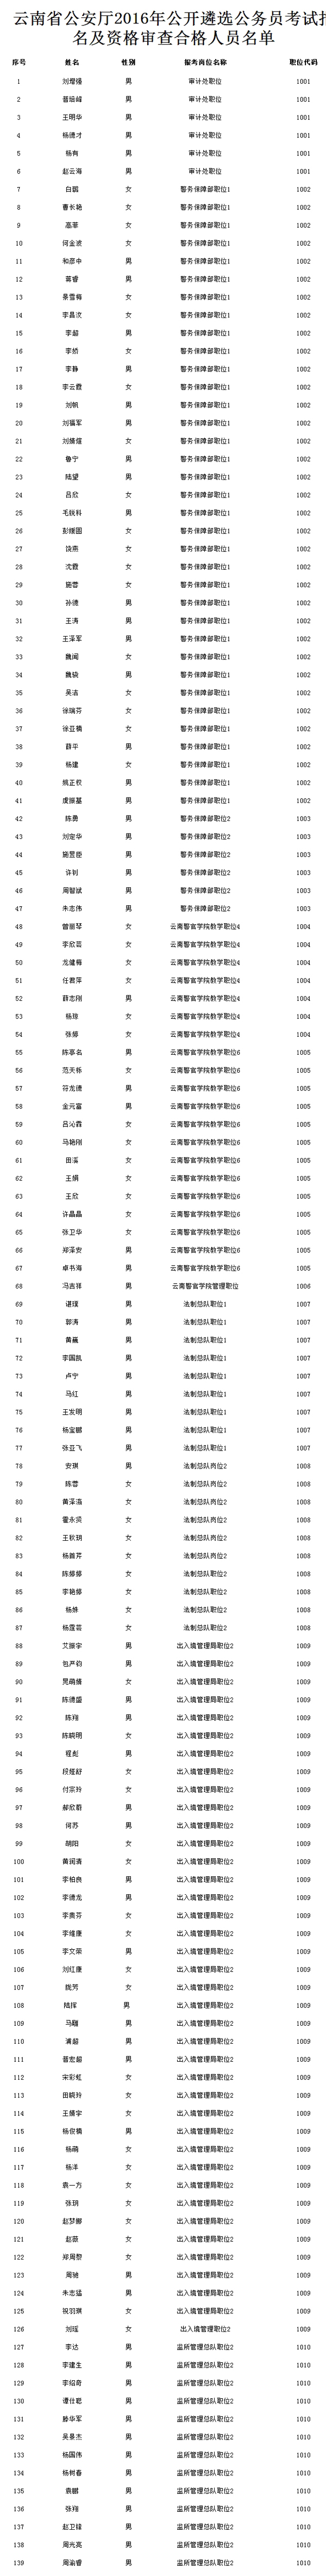 云南省公安厅2016年公开遴选公务员考试报名及资格审查合格人员名单.jpg